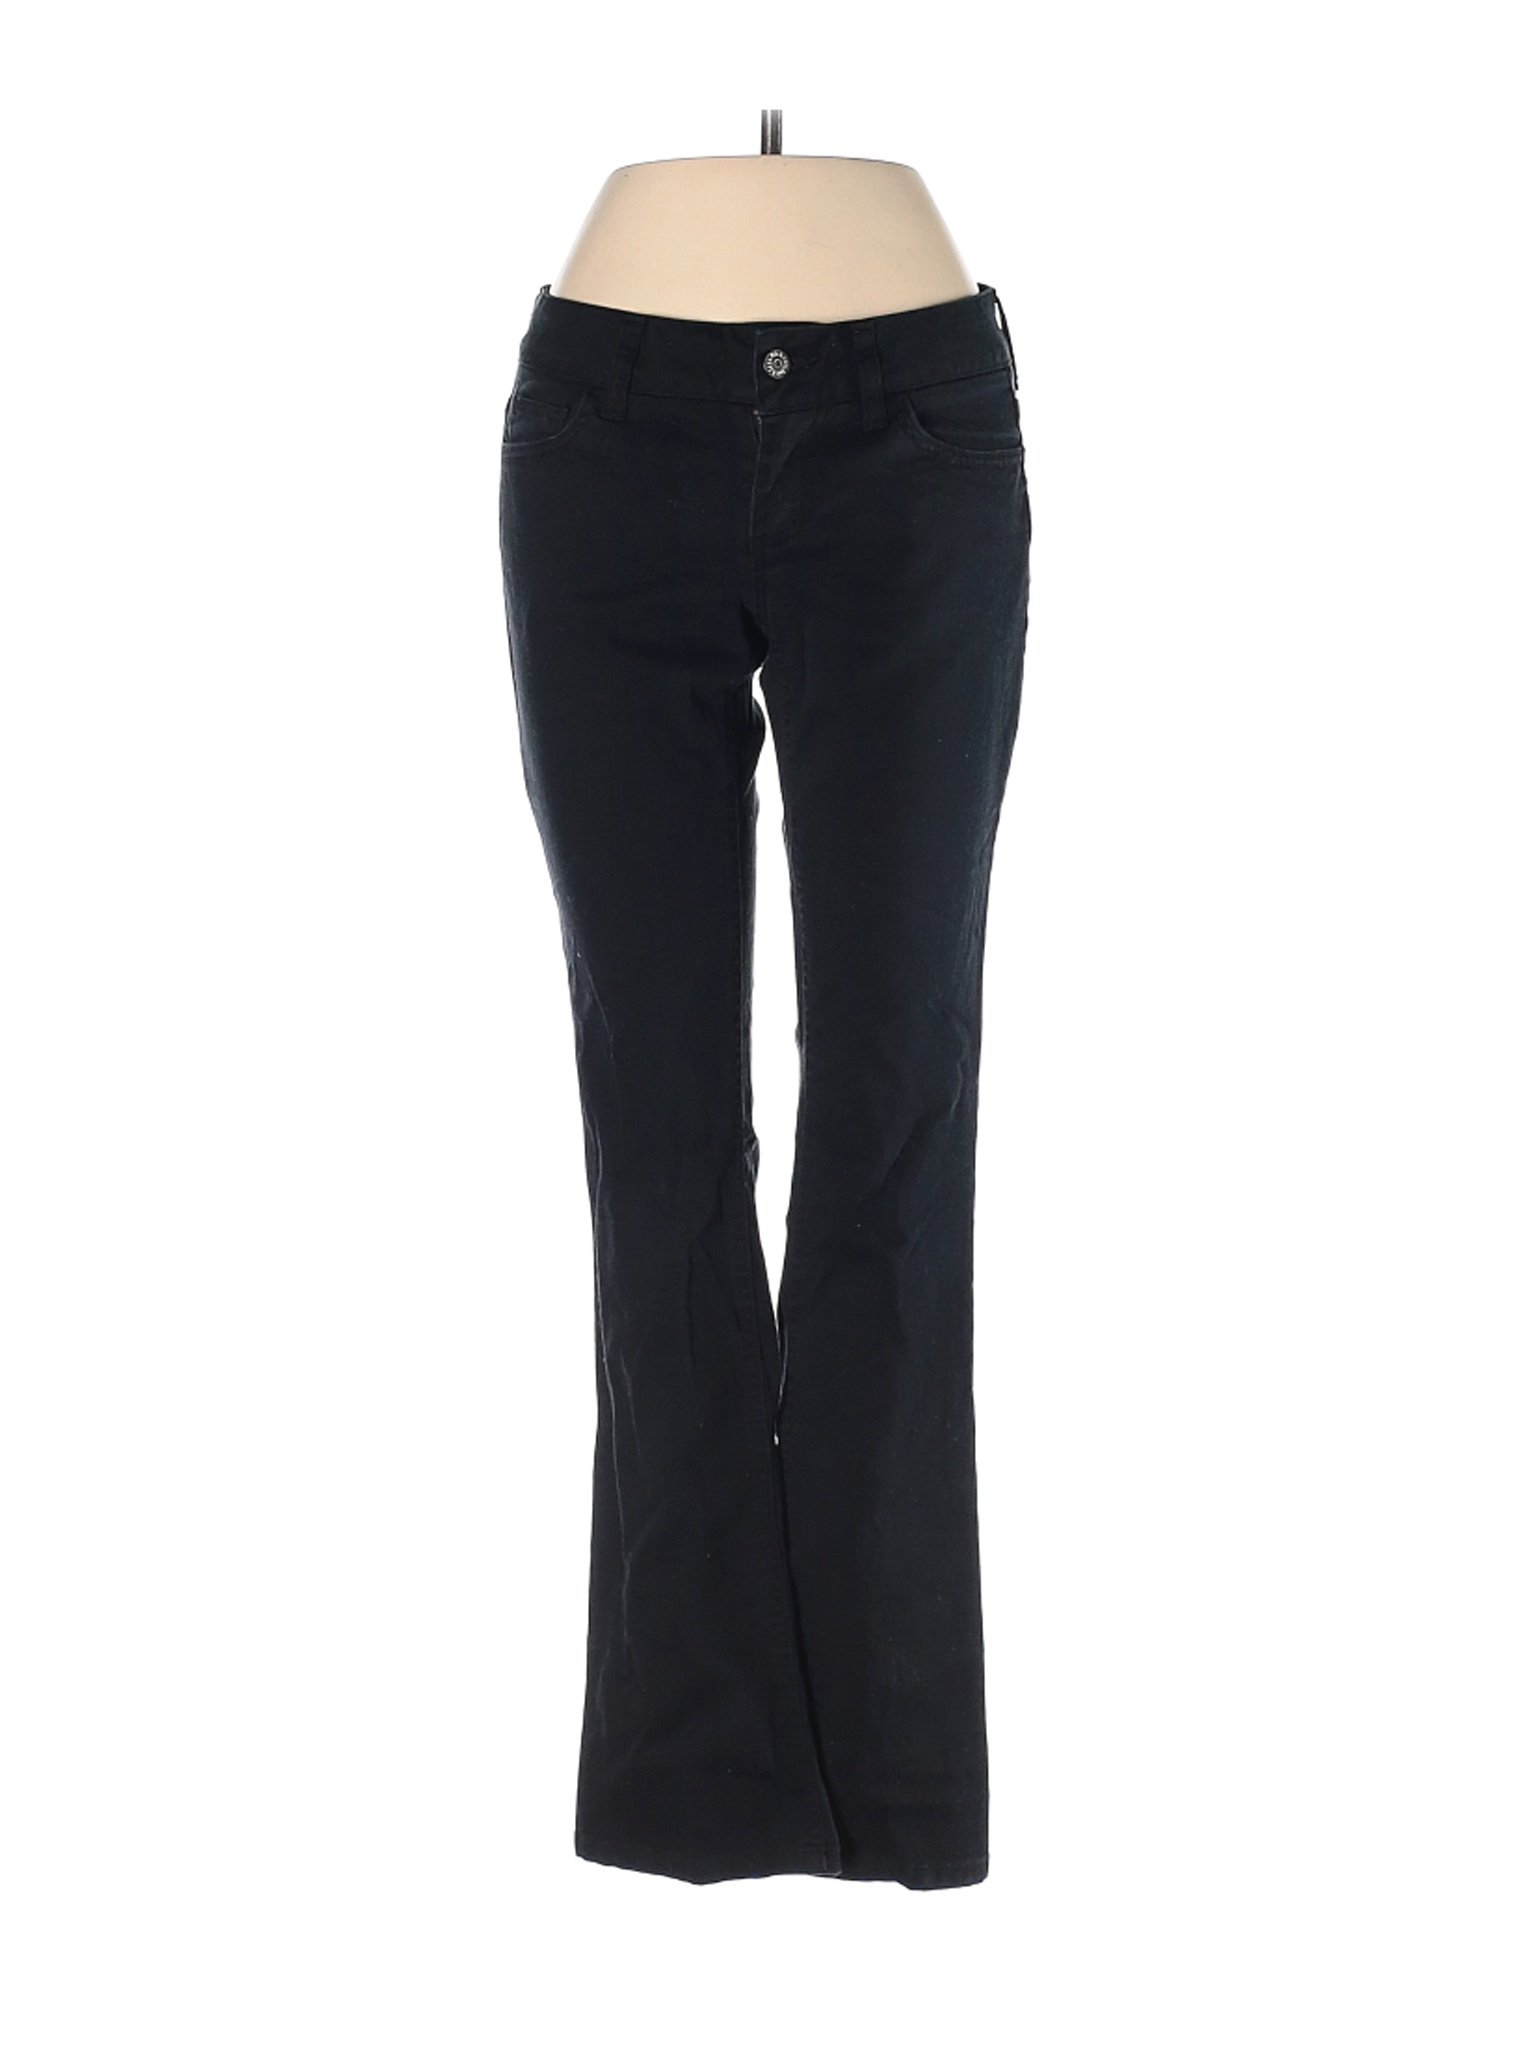 Dickies Women Black Jeans 3 | eBay